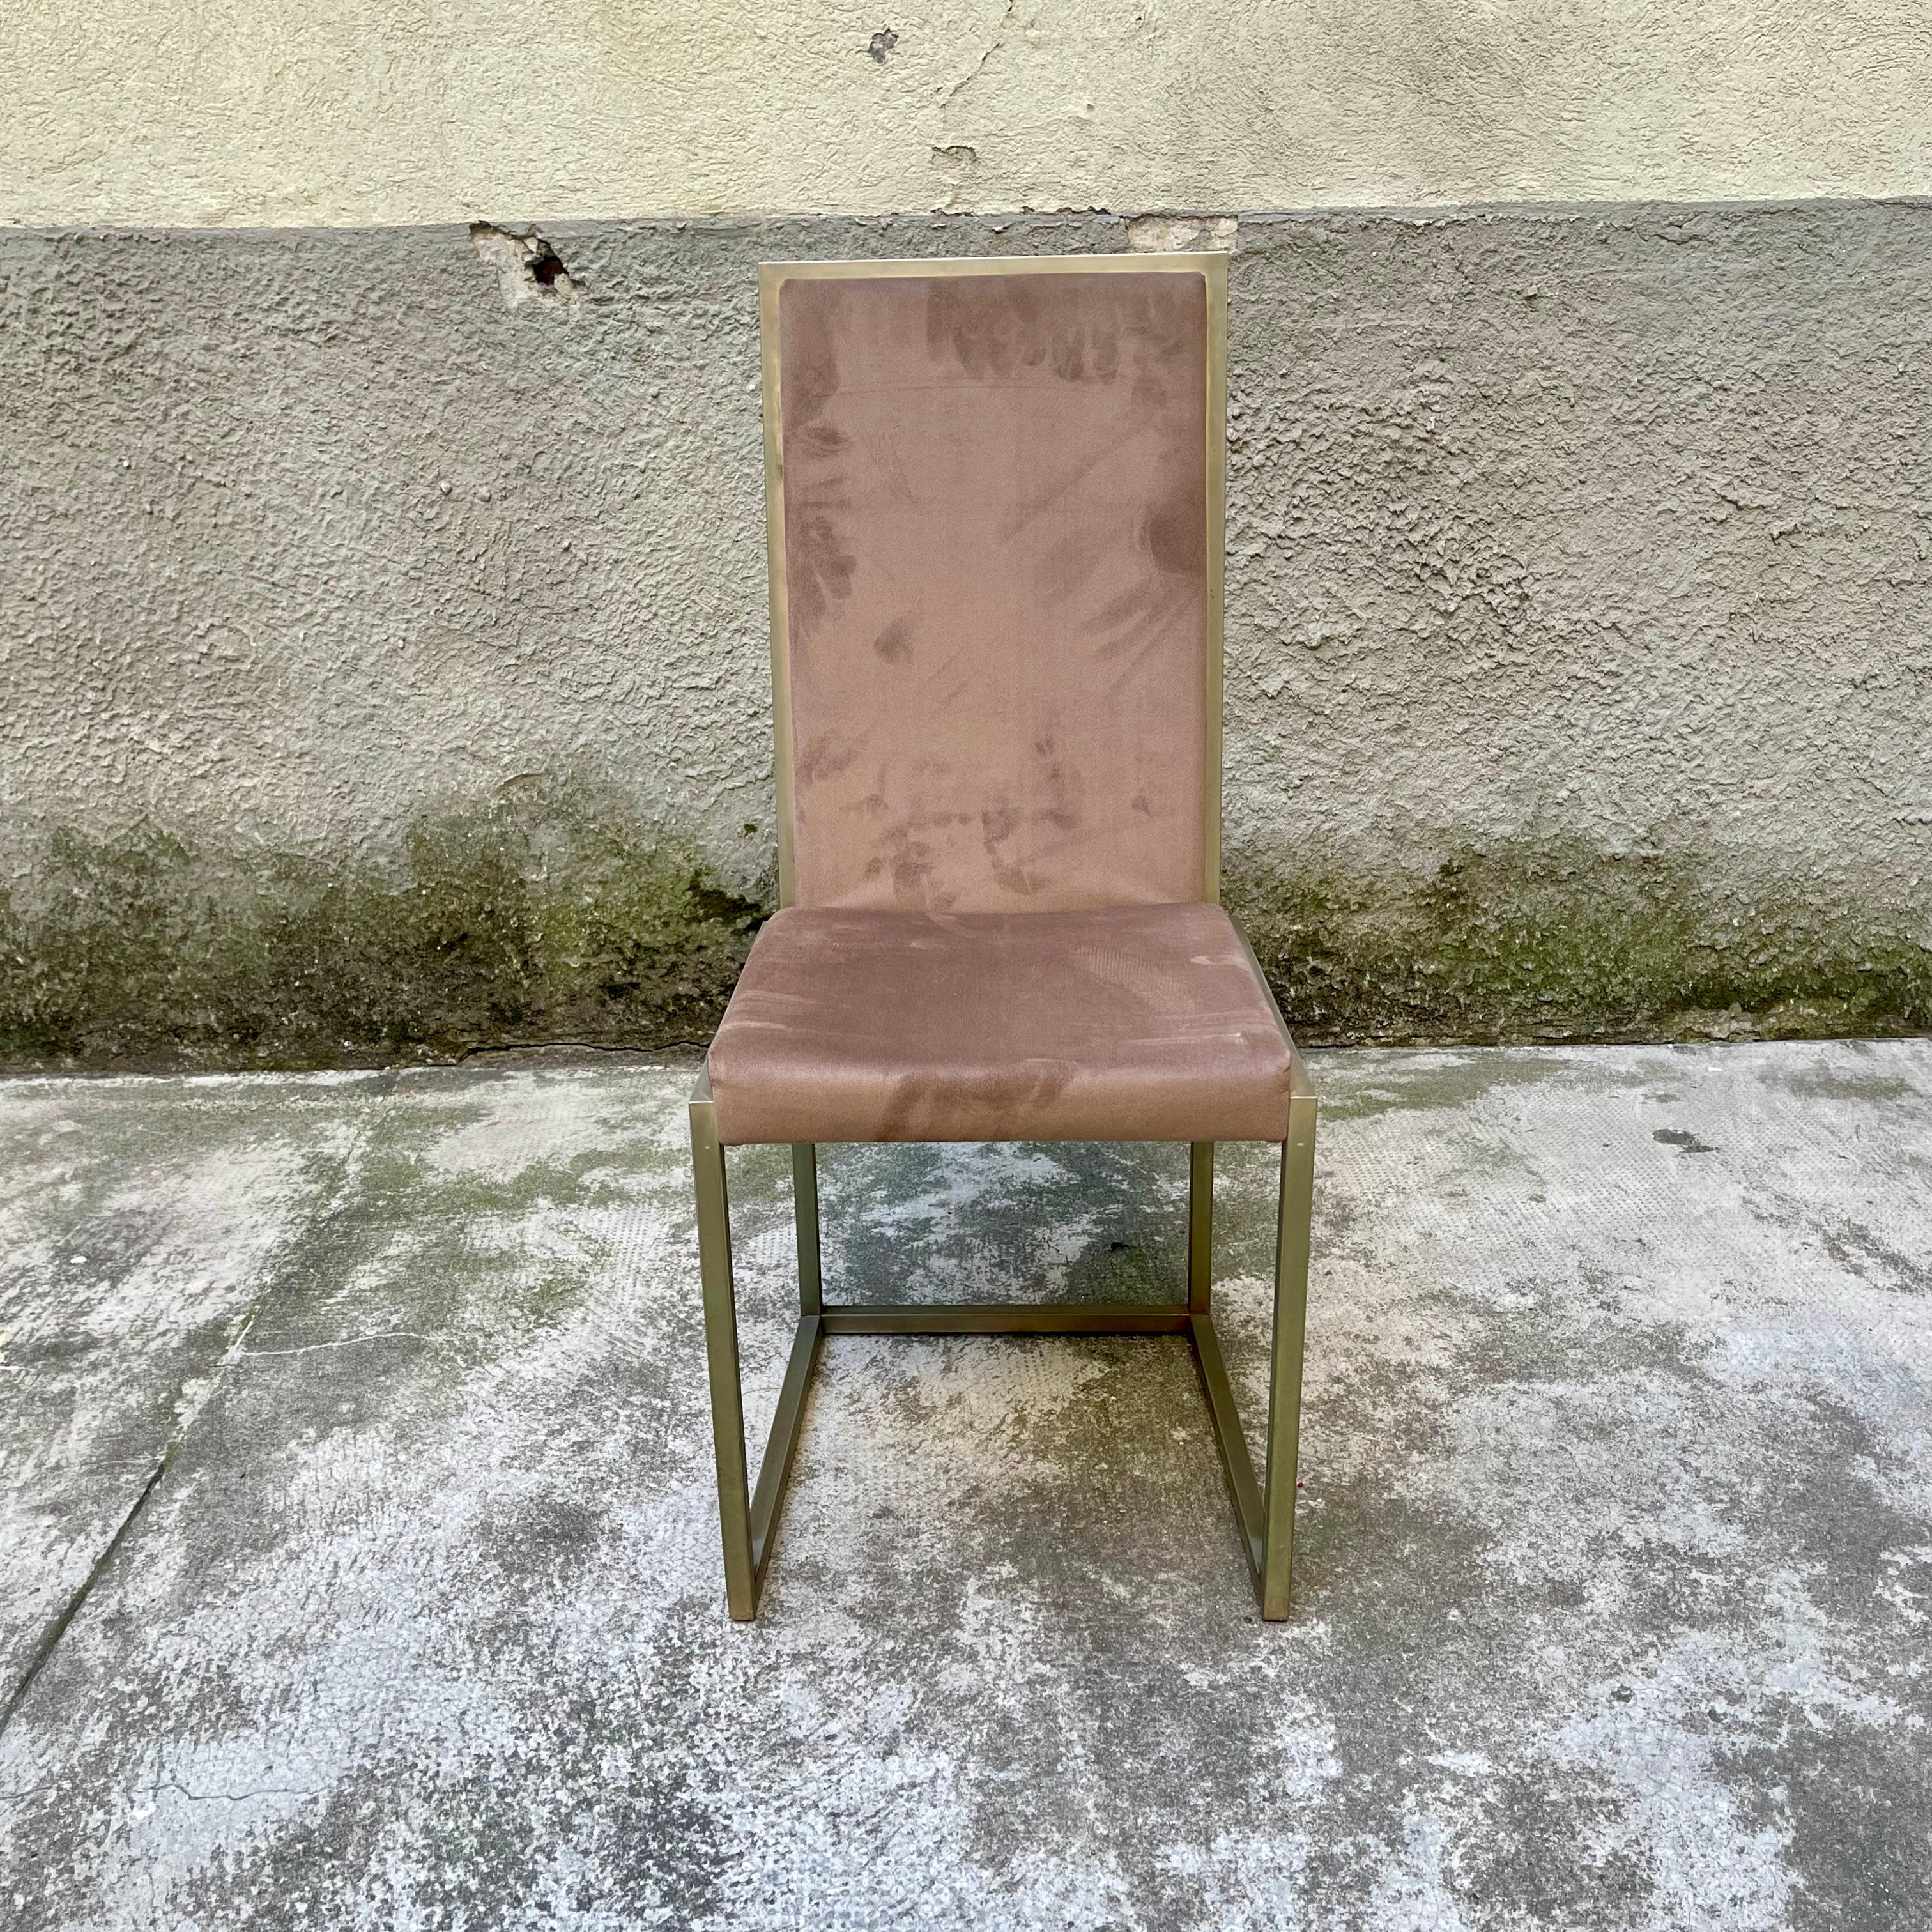 Cet ensemble de 4 chaises, attribuées à la production de la société Sabot, récemment retapissées en Alcantara brun, est constitué de tubes métalliques dorés à section carrée. Ils peuvent être combinés avec une table et un buffet, qui faisaient